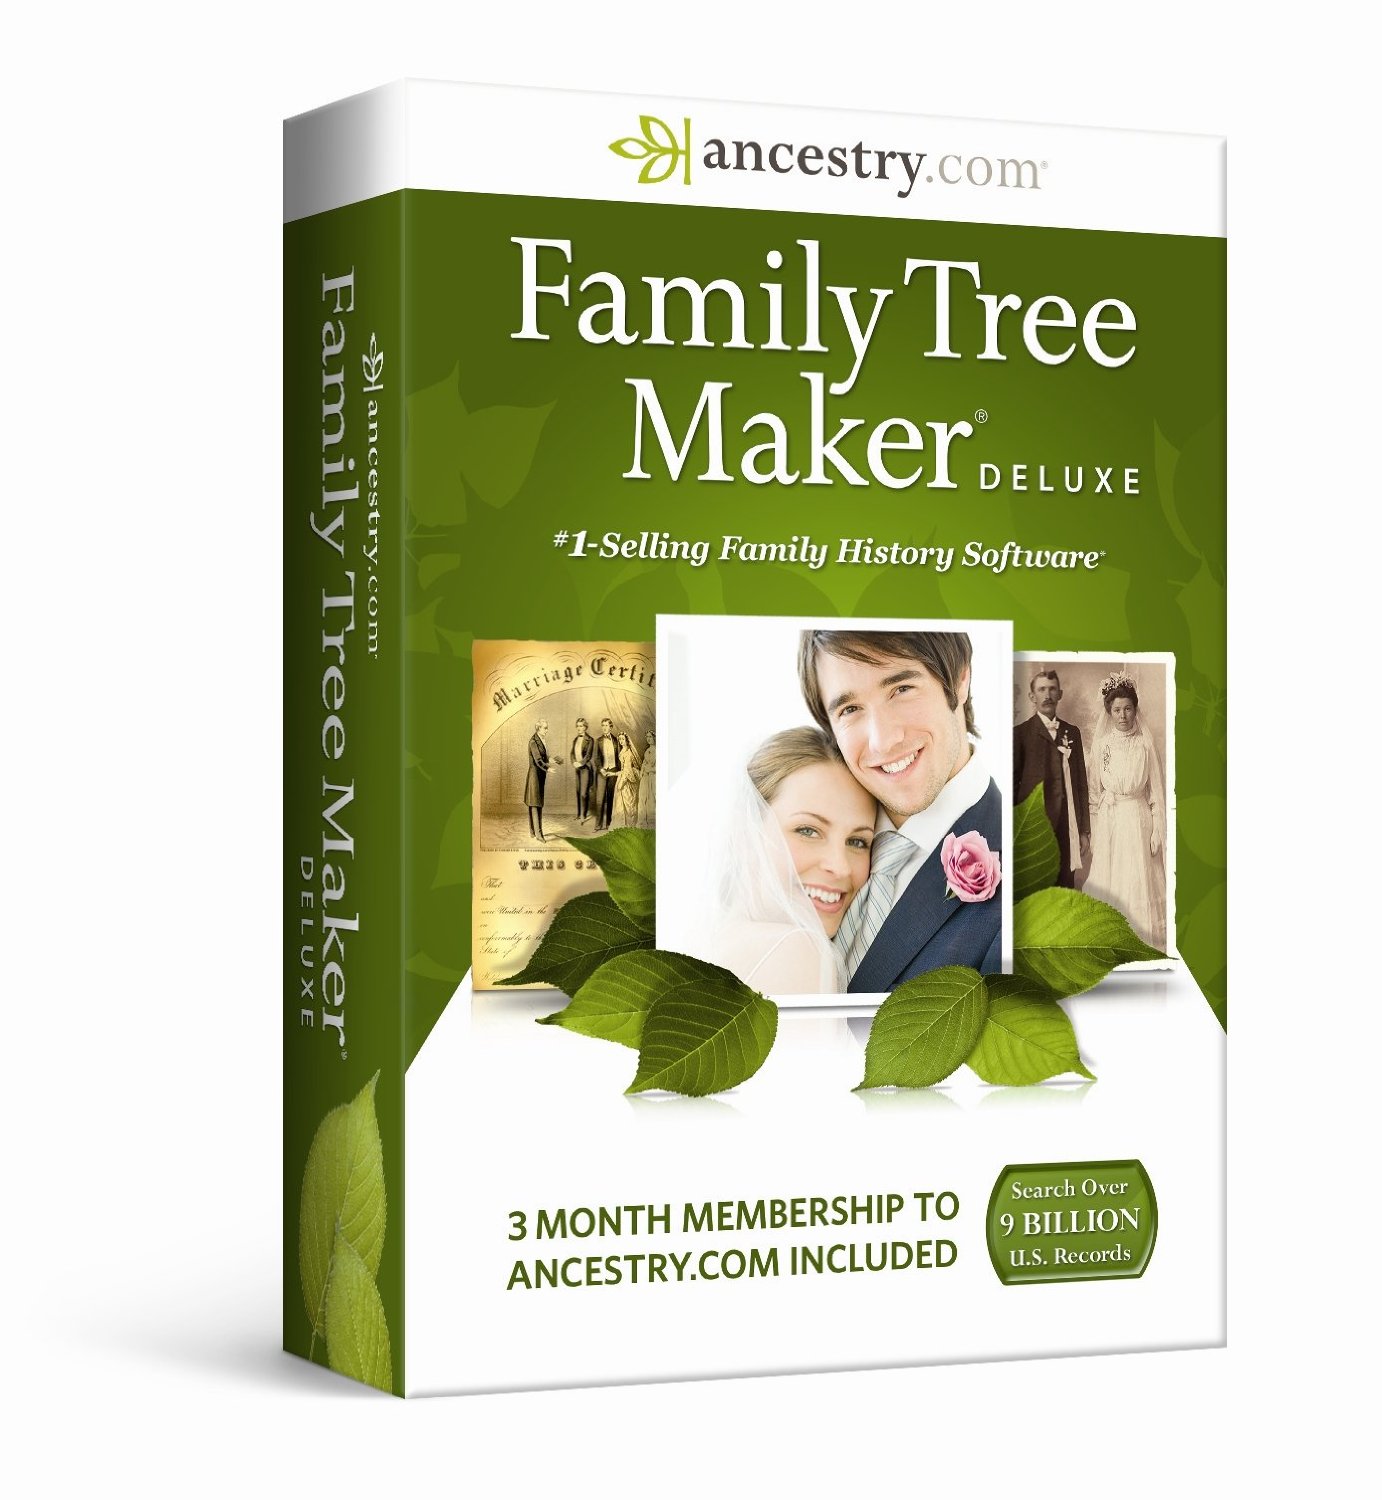 Family Tree Builder 8.0.0.8642 downloading